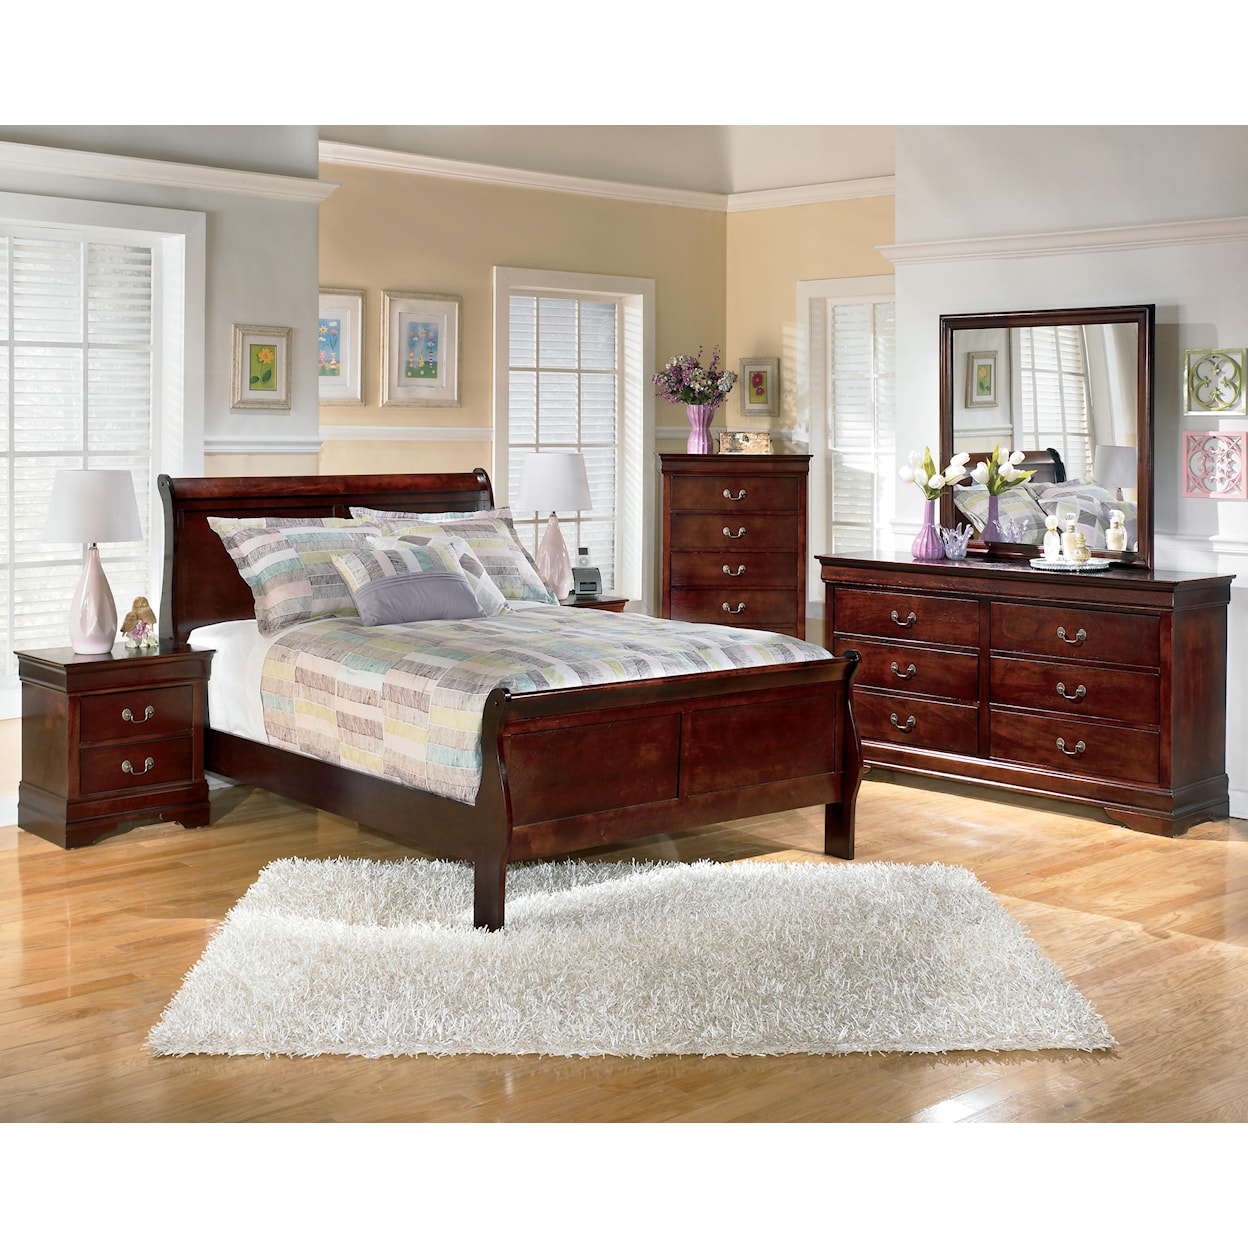 Ashley Furniture Signature Design Alisdair 5 Piece Full Bedroom Group